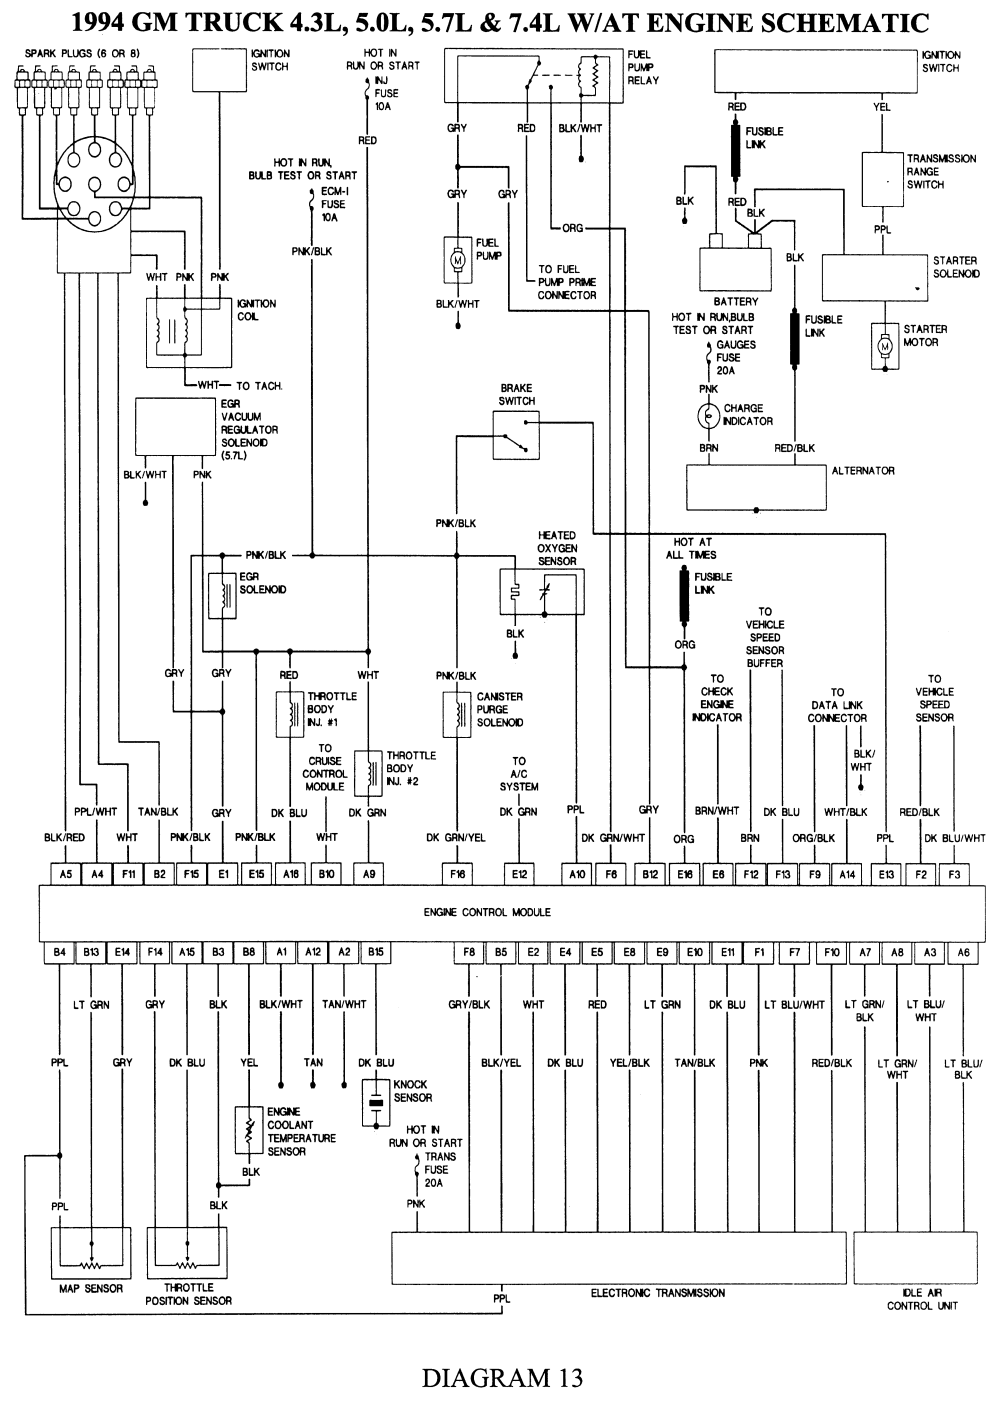 wiring diagram for esc on 1995 chevrolet k1500 5.7 pick up